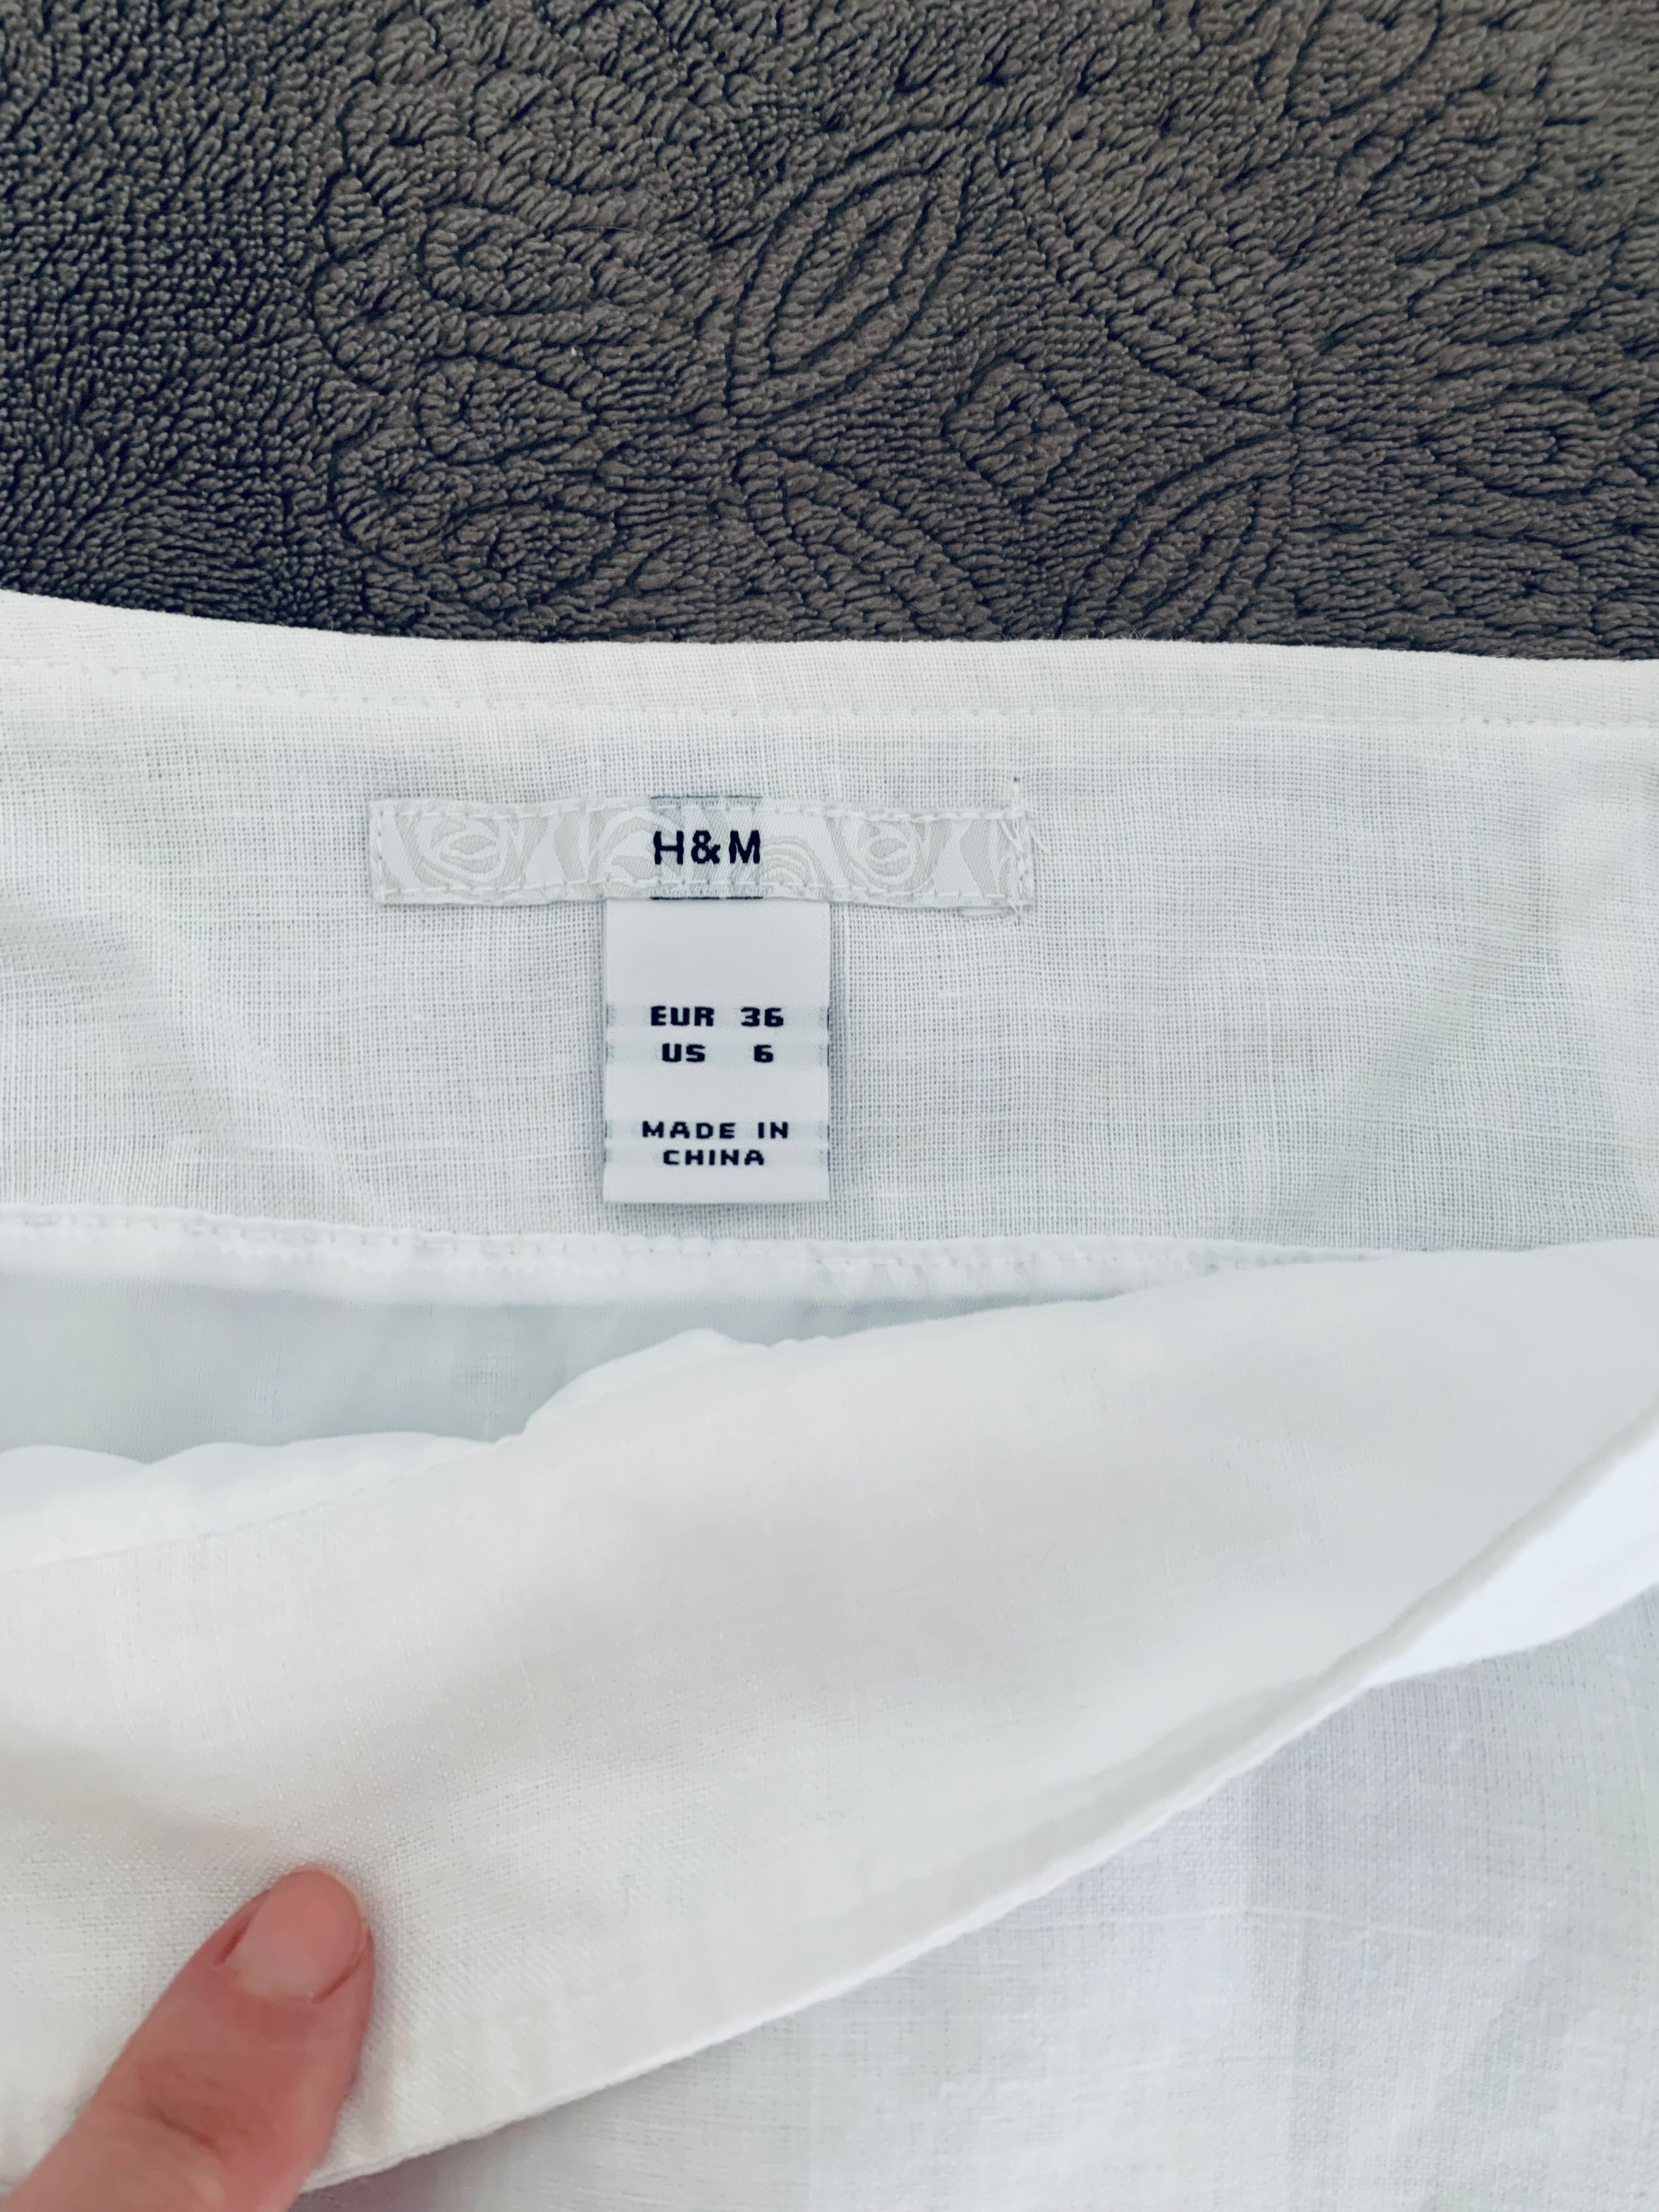 Льняная юбка H&M, белоснежная, новая, 36-38